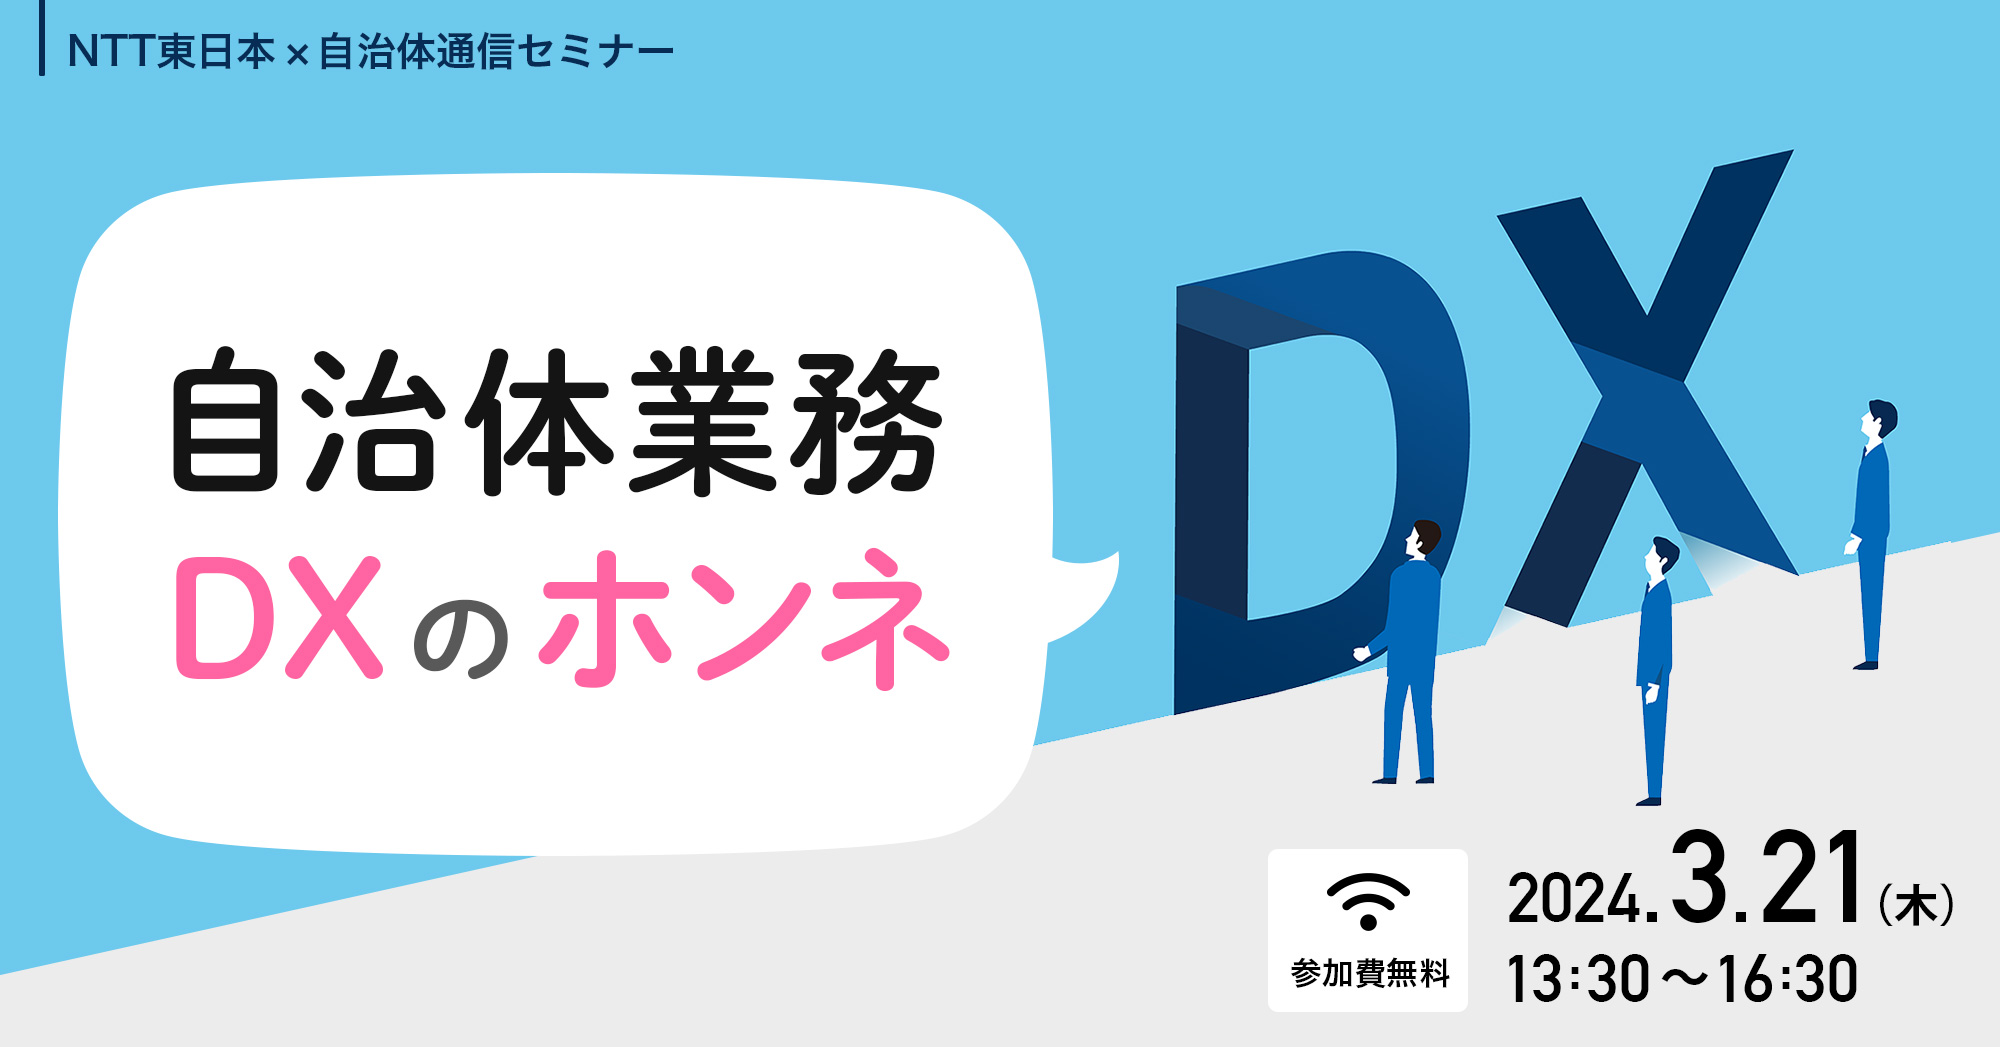 【NTT東日本×自治体通信共催セミナー】自治体業務DXのホンネ